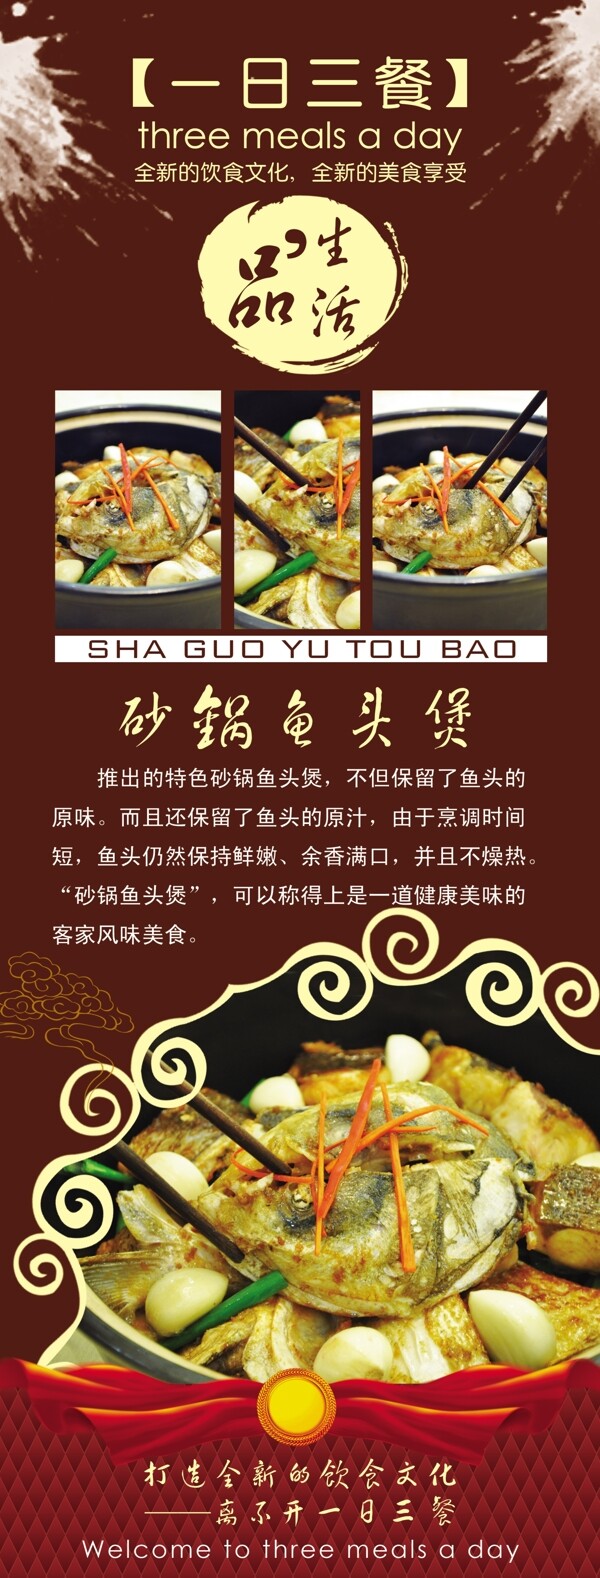 一日三餐传统中餐砂锅鱼头煲PSDX展架海报图片